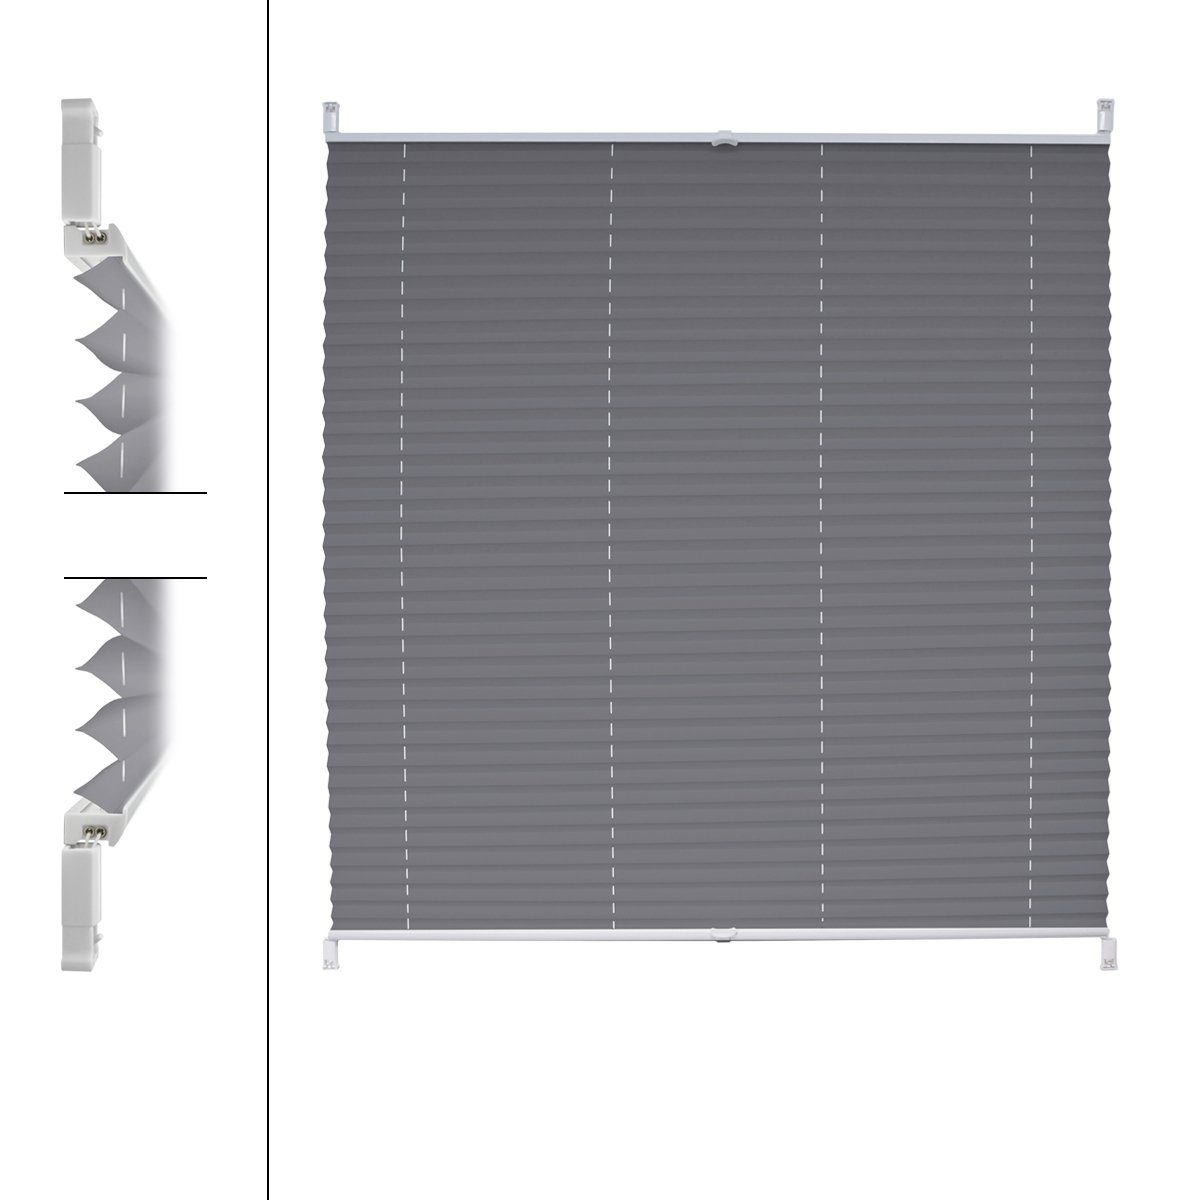 Grau Germany, 80x100cmKlemmfix grau, inkl. Befestigungsmaterial EasyFix inkl. Bohren ohne Plissee Befestigungsmaterial, 80x100 cm, ECD Klemmfix,